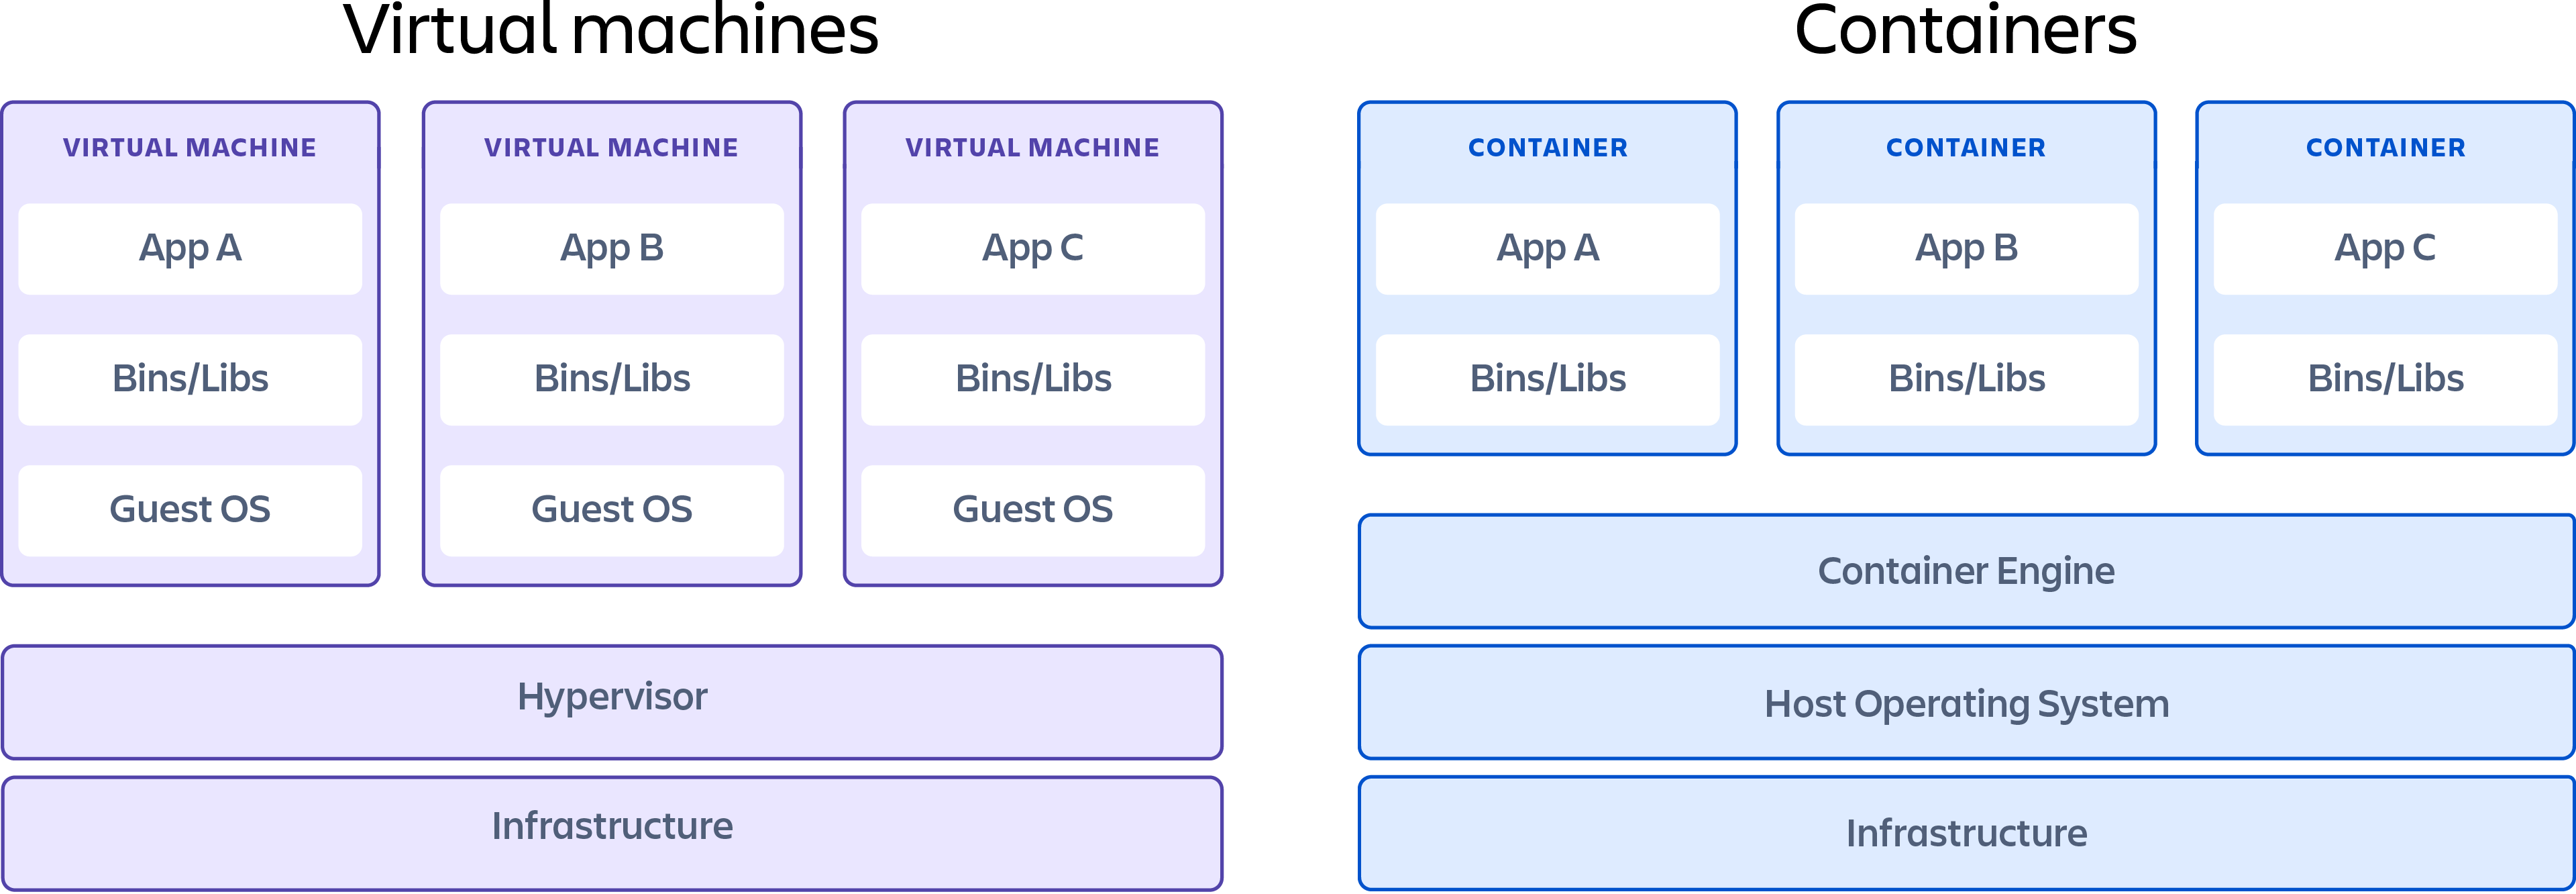 Контейнер, демонстрирующий различия между виртуальными машинами и контейнерами.